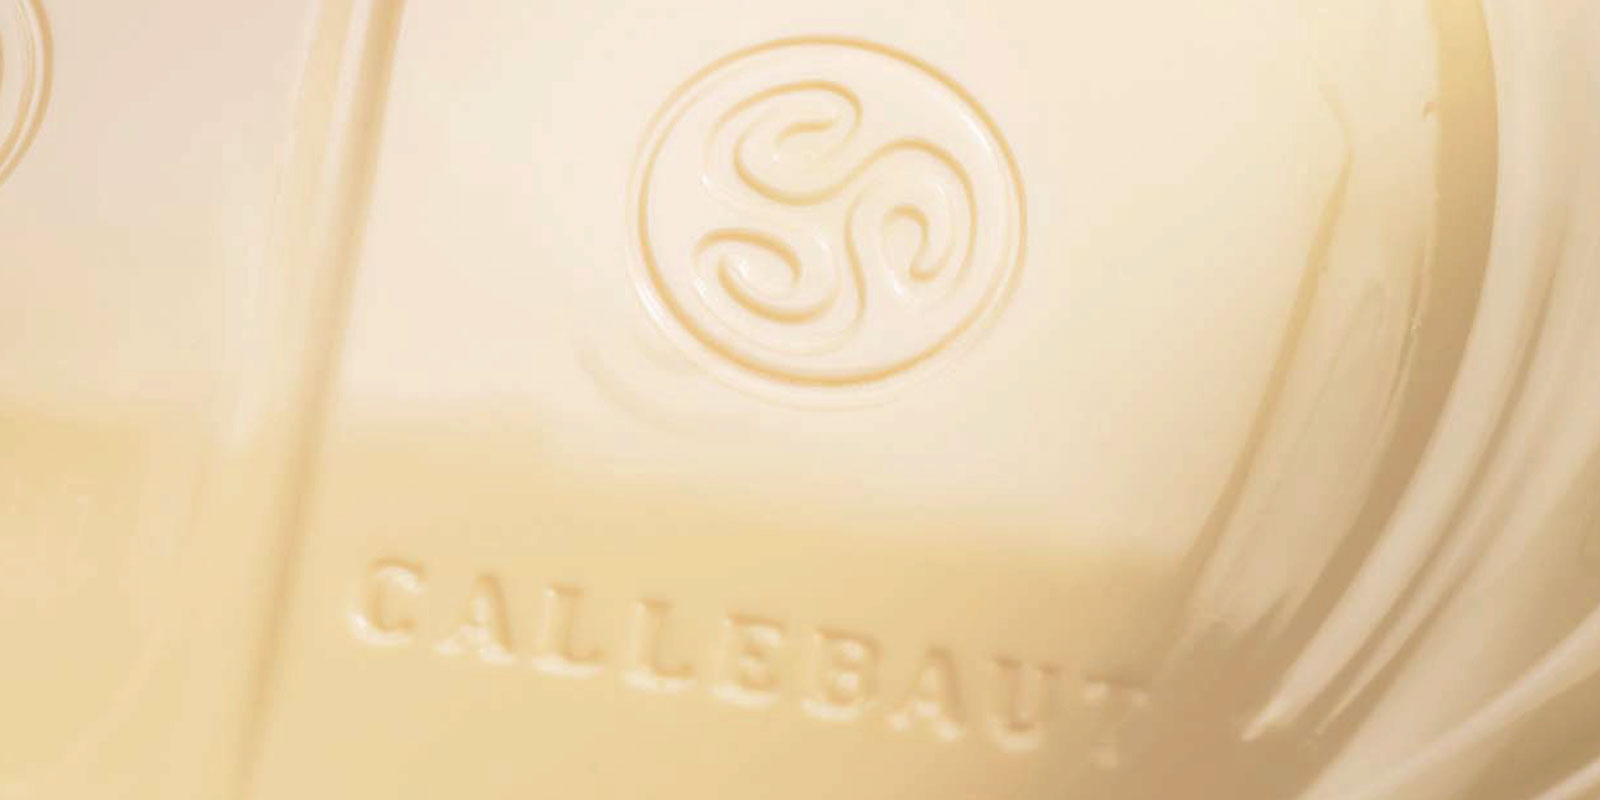 Hvitt sukkuladhi fra Callebaut Hvitt sukkuladhi er afrakstur thess adh blanda saman kakosmjori, mjolkurdufti og sykri. Blondunarhlutfall thessara innihaldsefna - til daemis vanillins, vanillu edha lesitins - raedhur bragdhi lokaafurdharinnar.